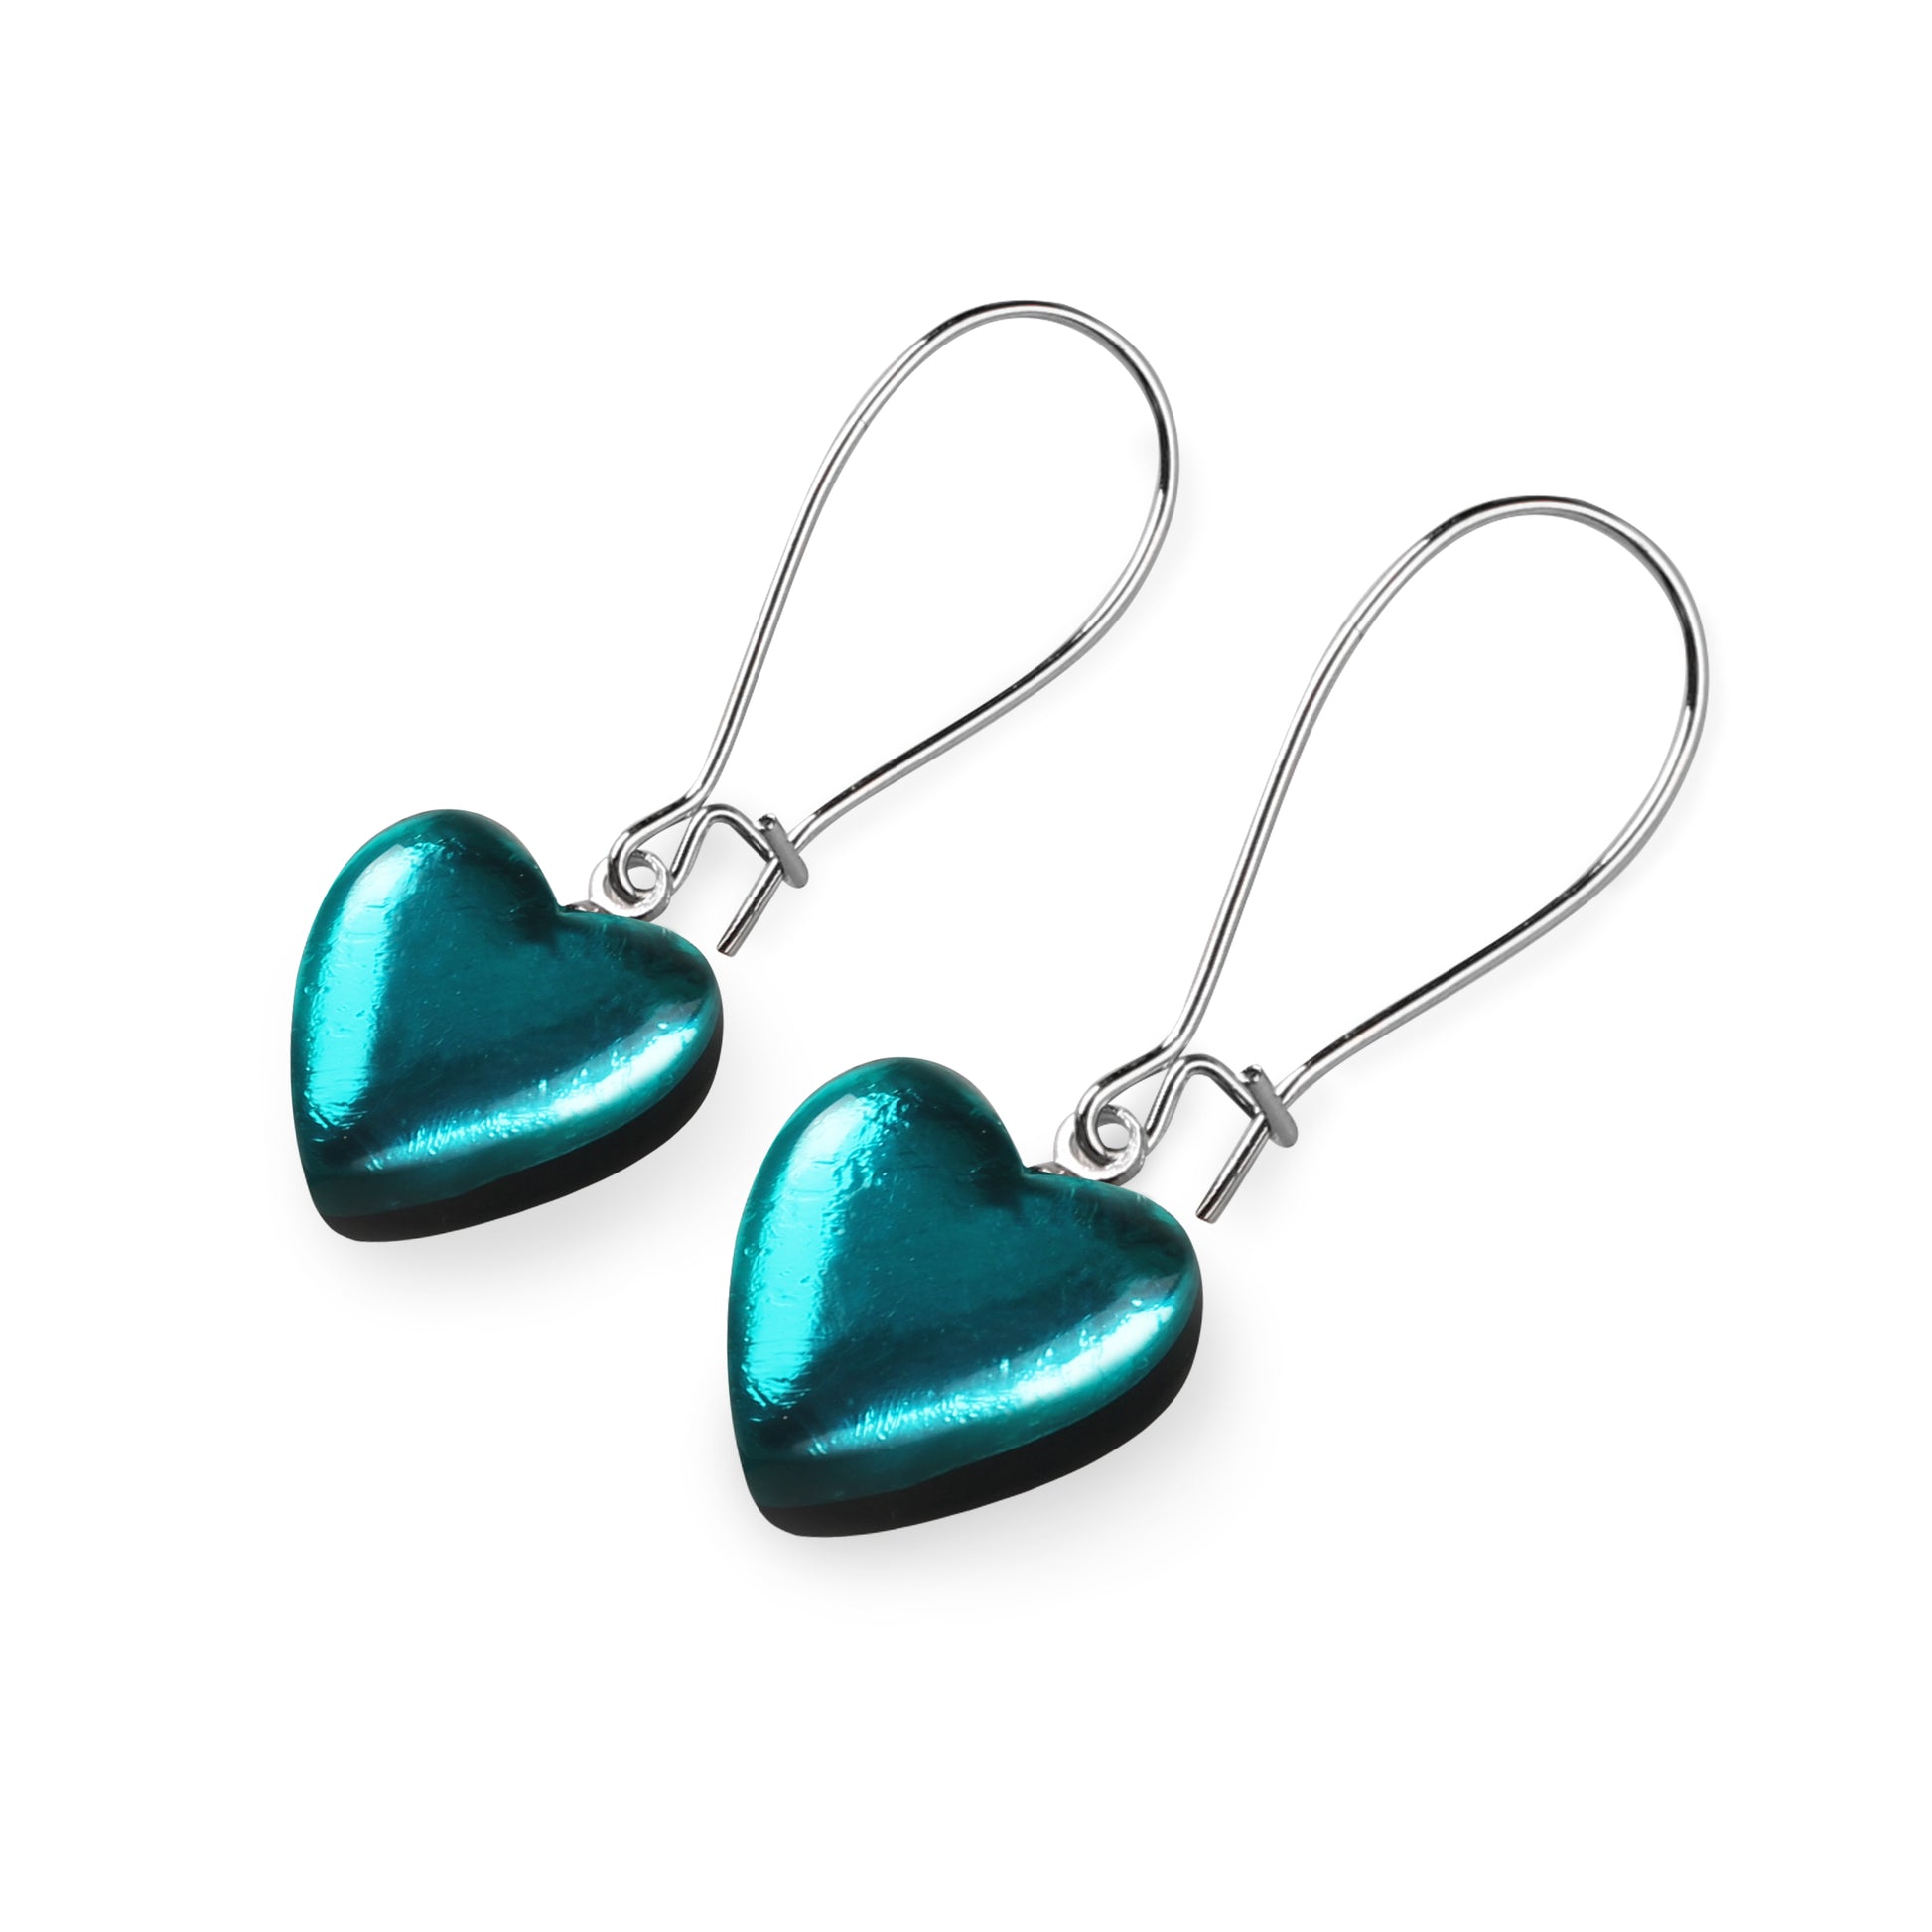 Teal Love Heart Shiny Loop Earrings